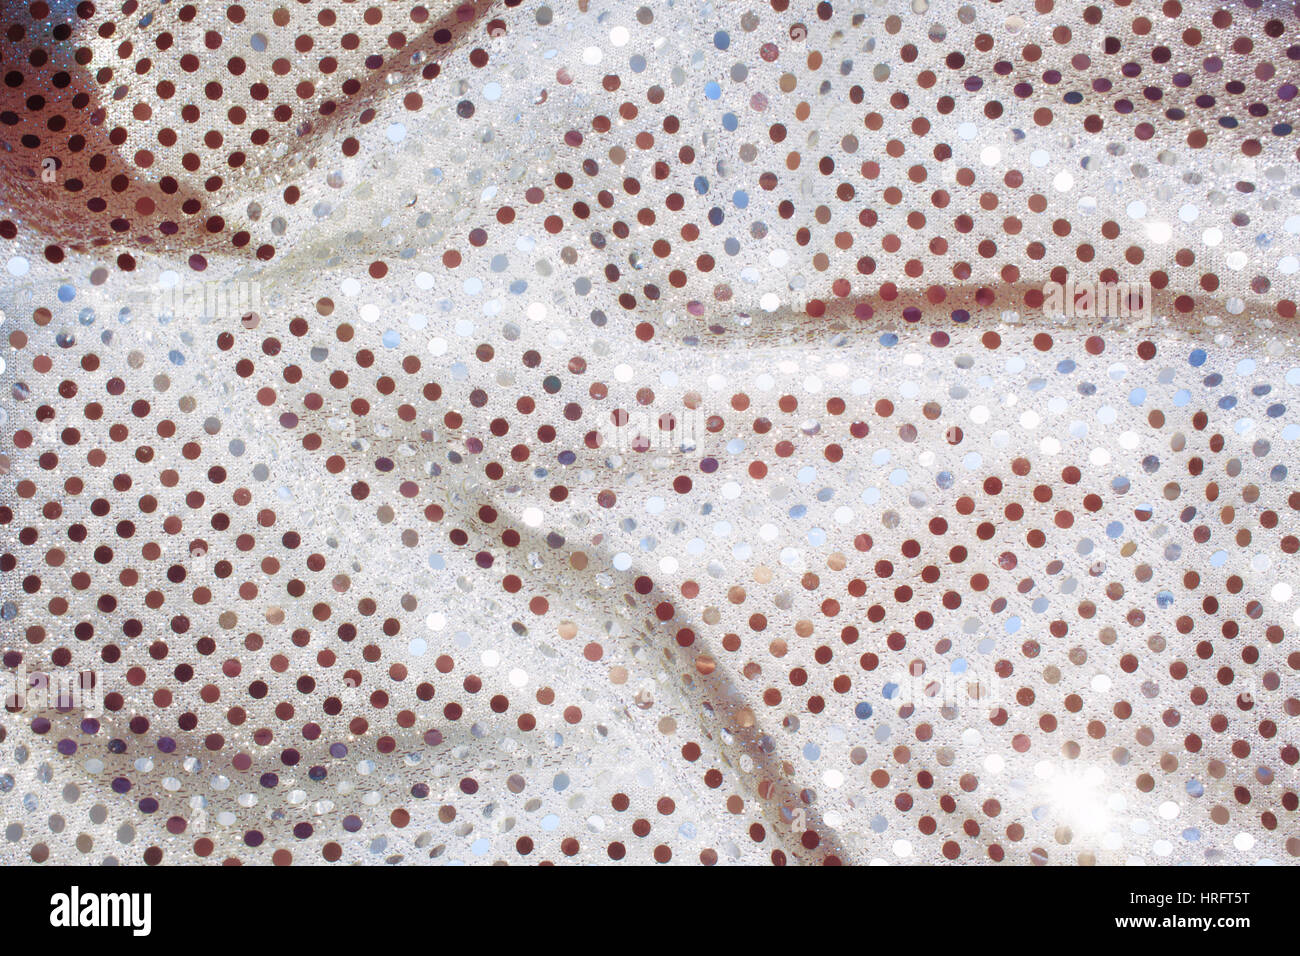 La texture de tissu argenté avec paillettes miroirs close-up Banque D'Images